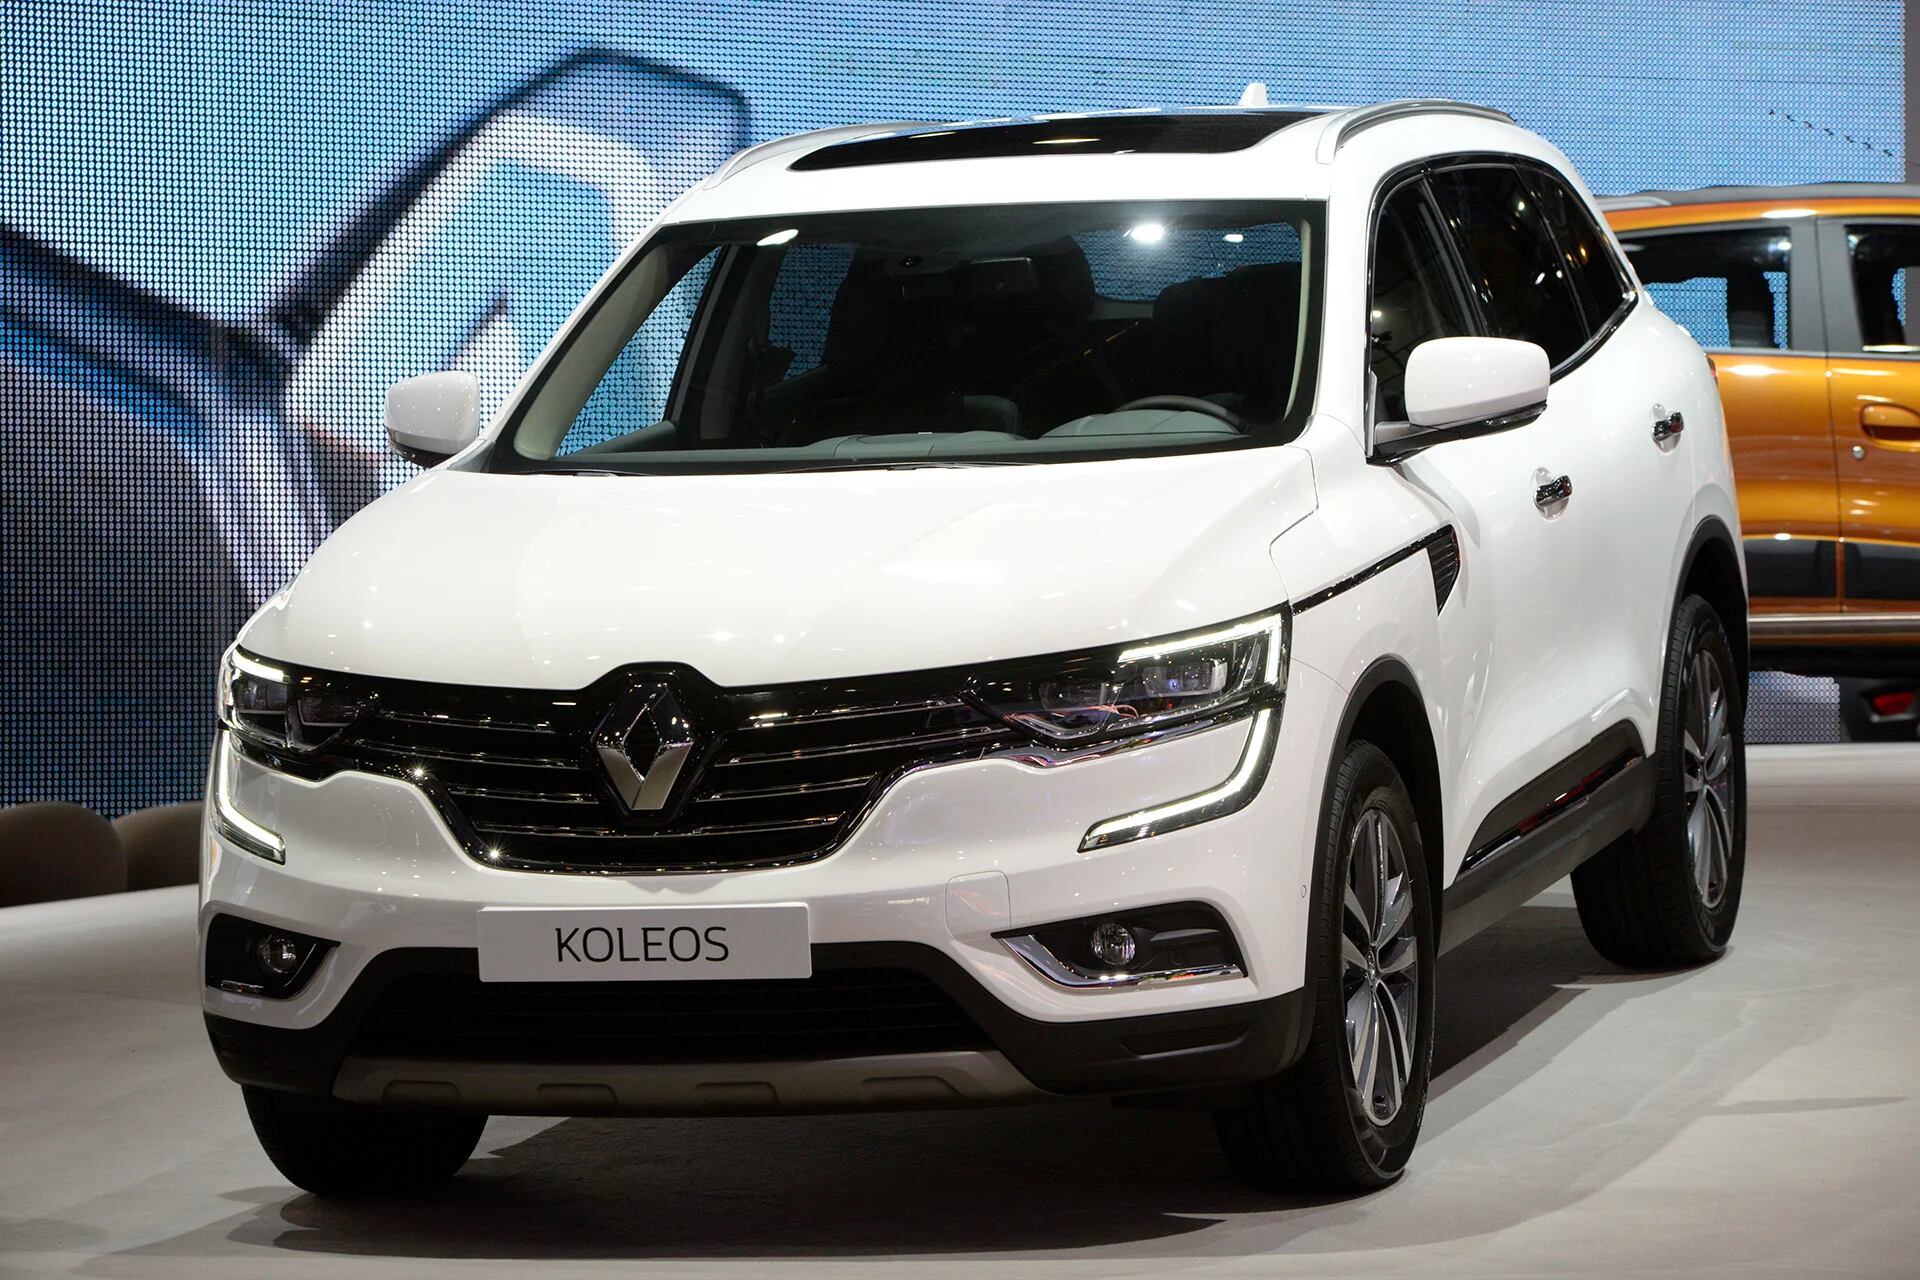 Es un auténtico SUV del segmento D, que completa el proceso de renovación de estilo de diseño de la marca y se posiciona como el emblema de alta gama del Grupo Renault a nivel global